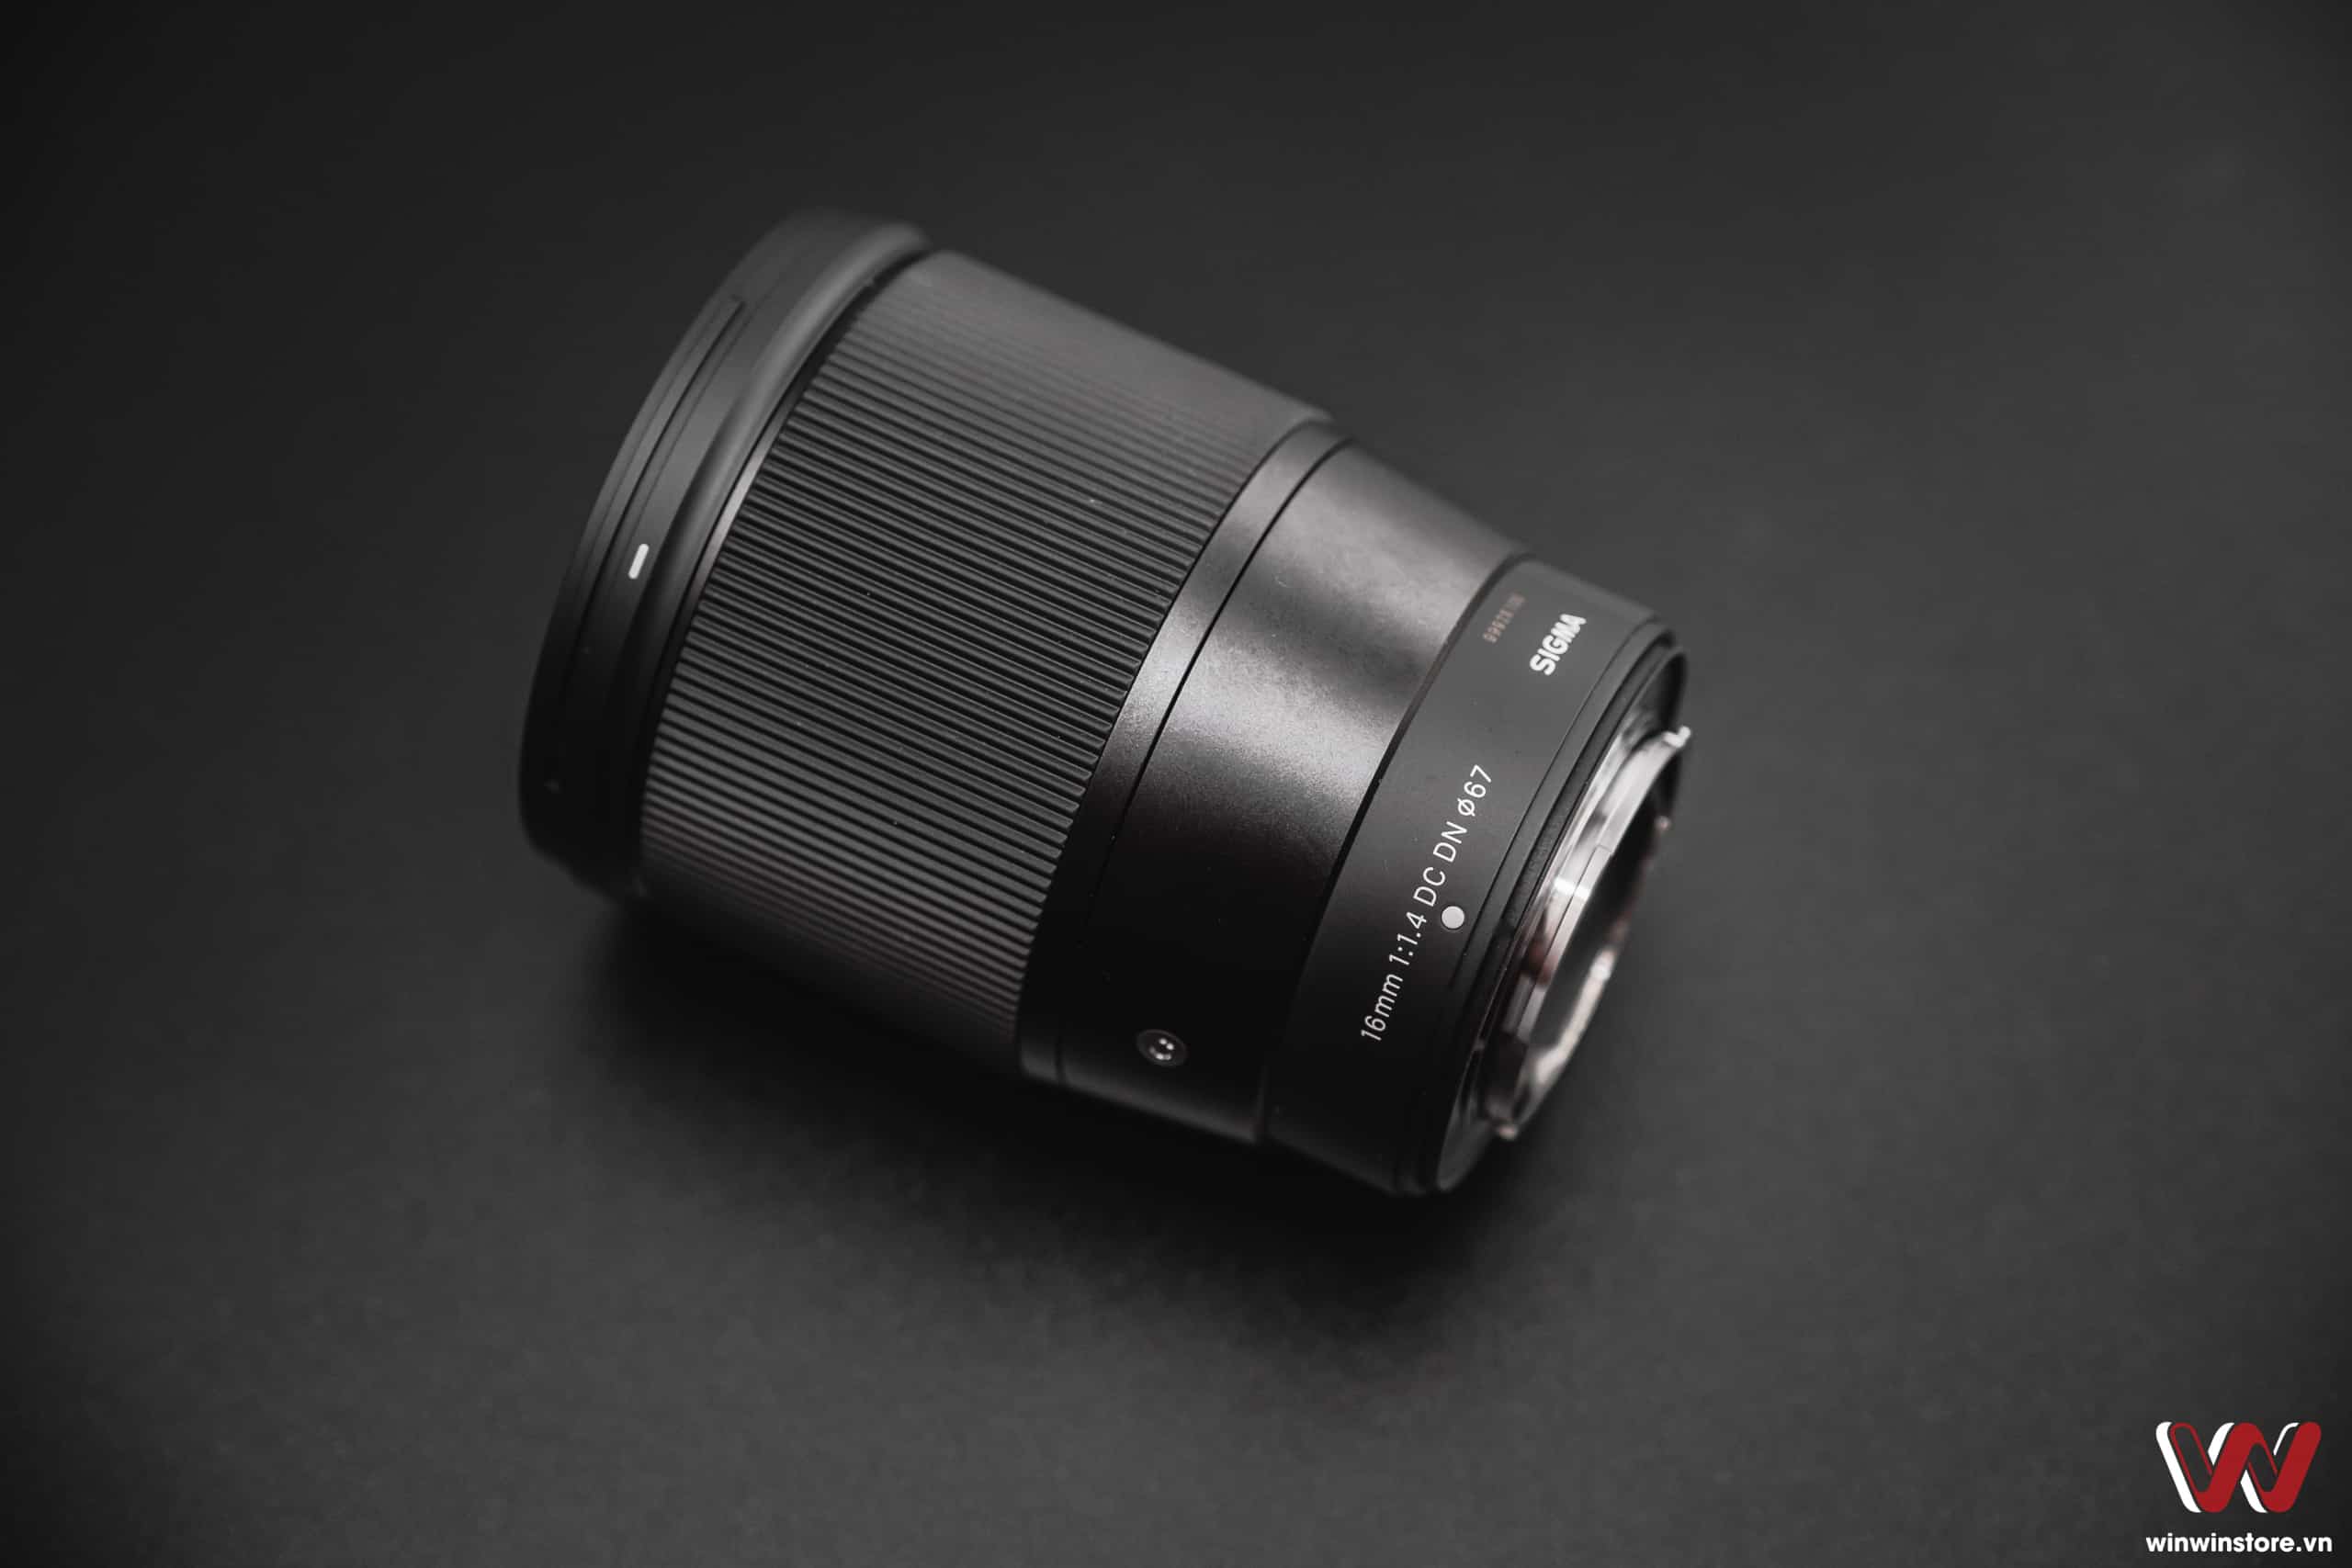 Trên tay ống kính Sigma 16mm F1.4 DC DN Contemporary cho Fujifilm X: Hoàn thiện tốt, quang học tốt, nhiều thứ hứa hẹn trong tương lai